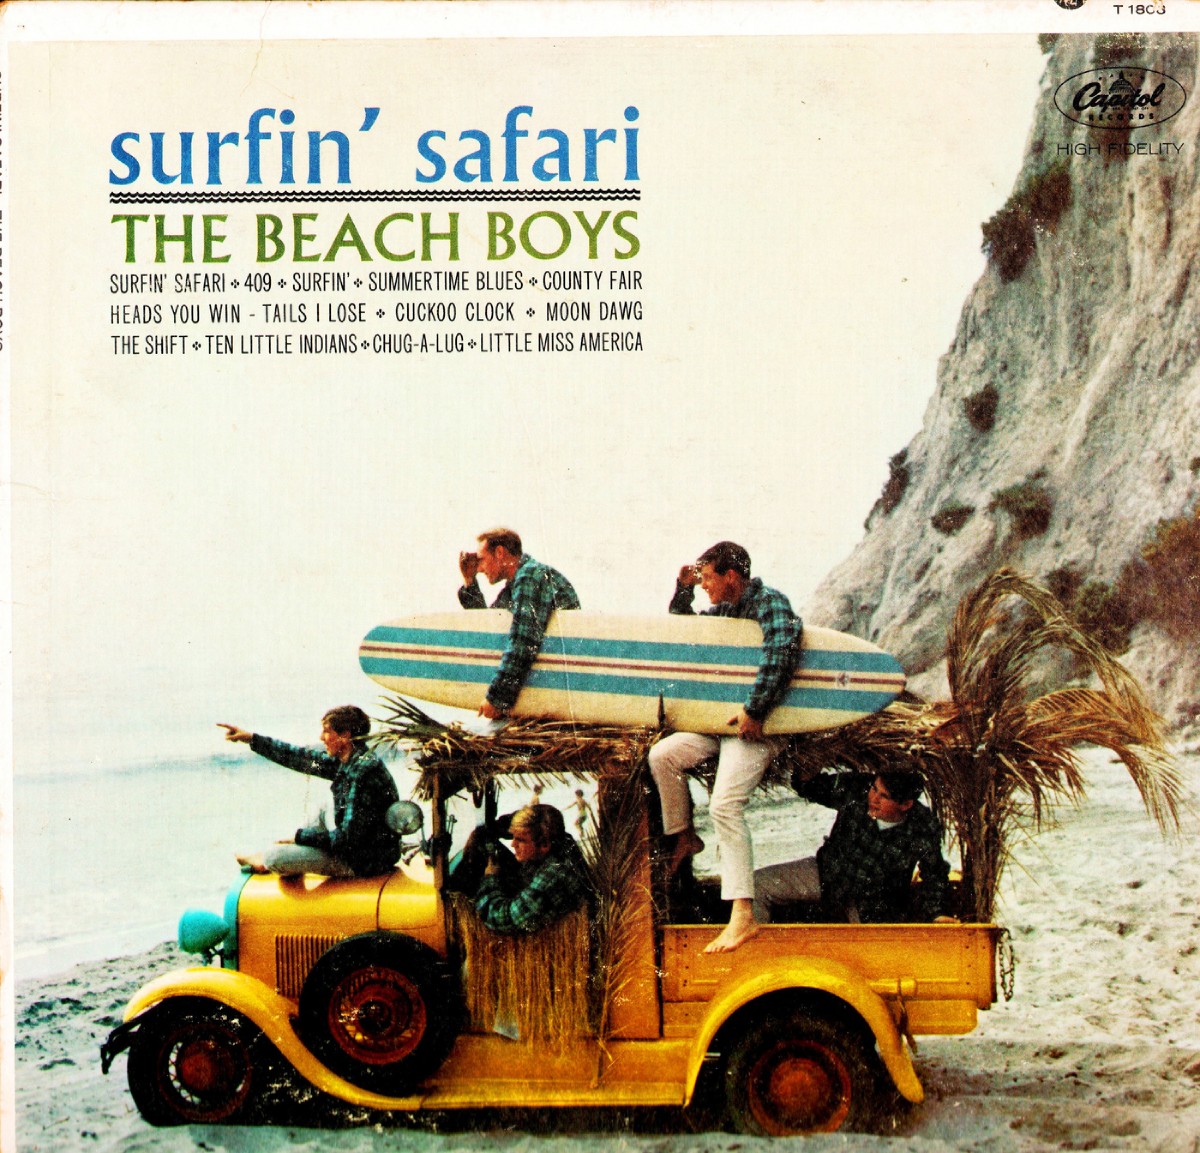 Couverture de "Surfin' Safari" par The Beach Boys